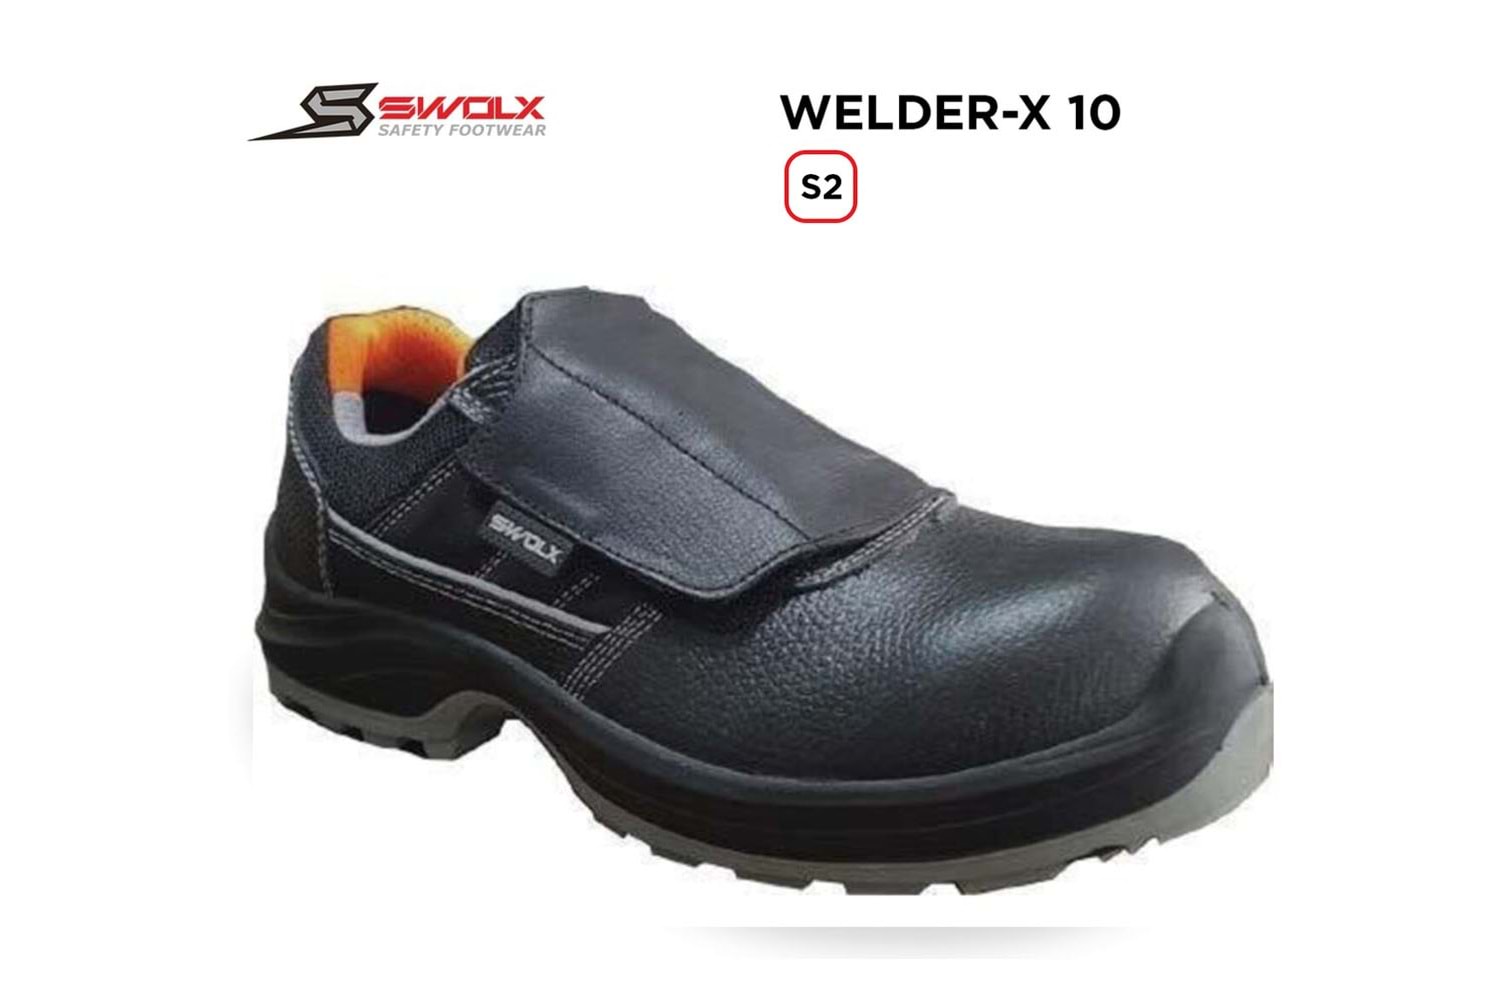 Swolx İş Ayakkabısı - Welder-X 10 S2 (Clas-x 10 K S2) Kaynakçı - 45